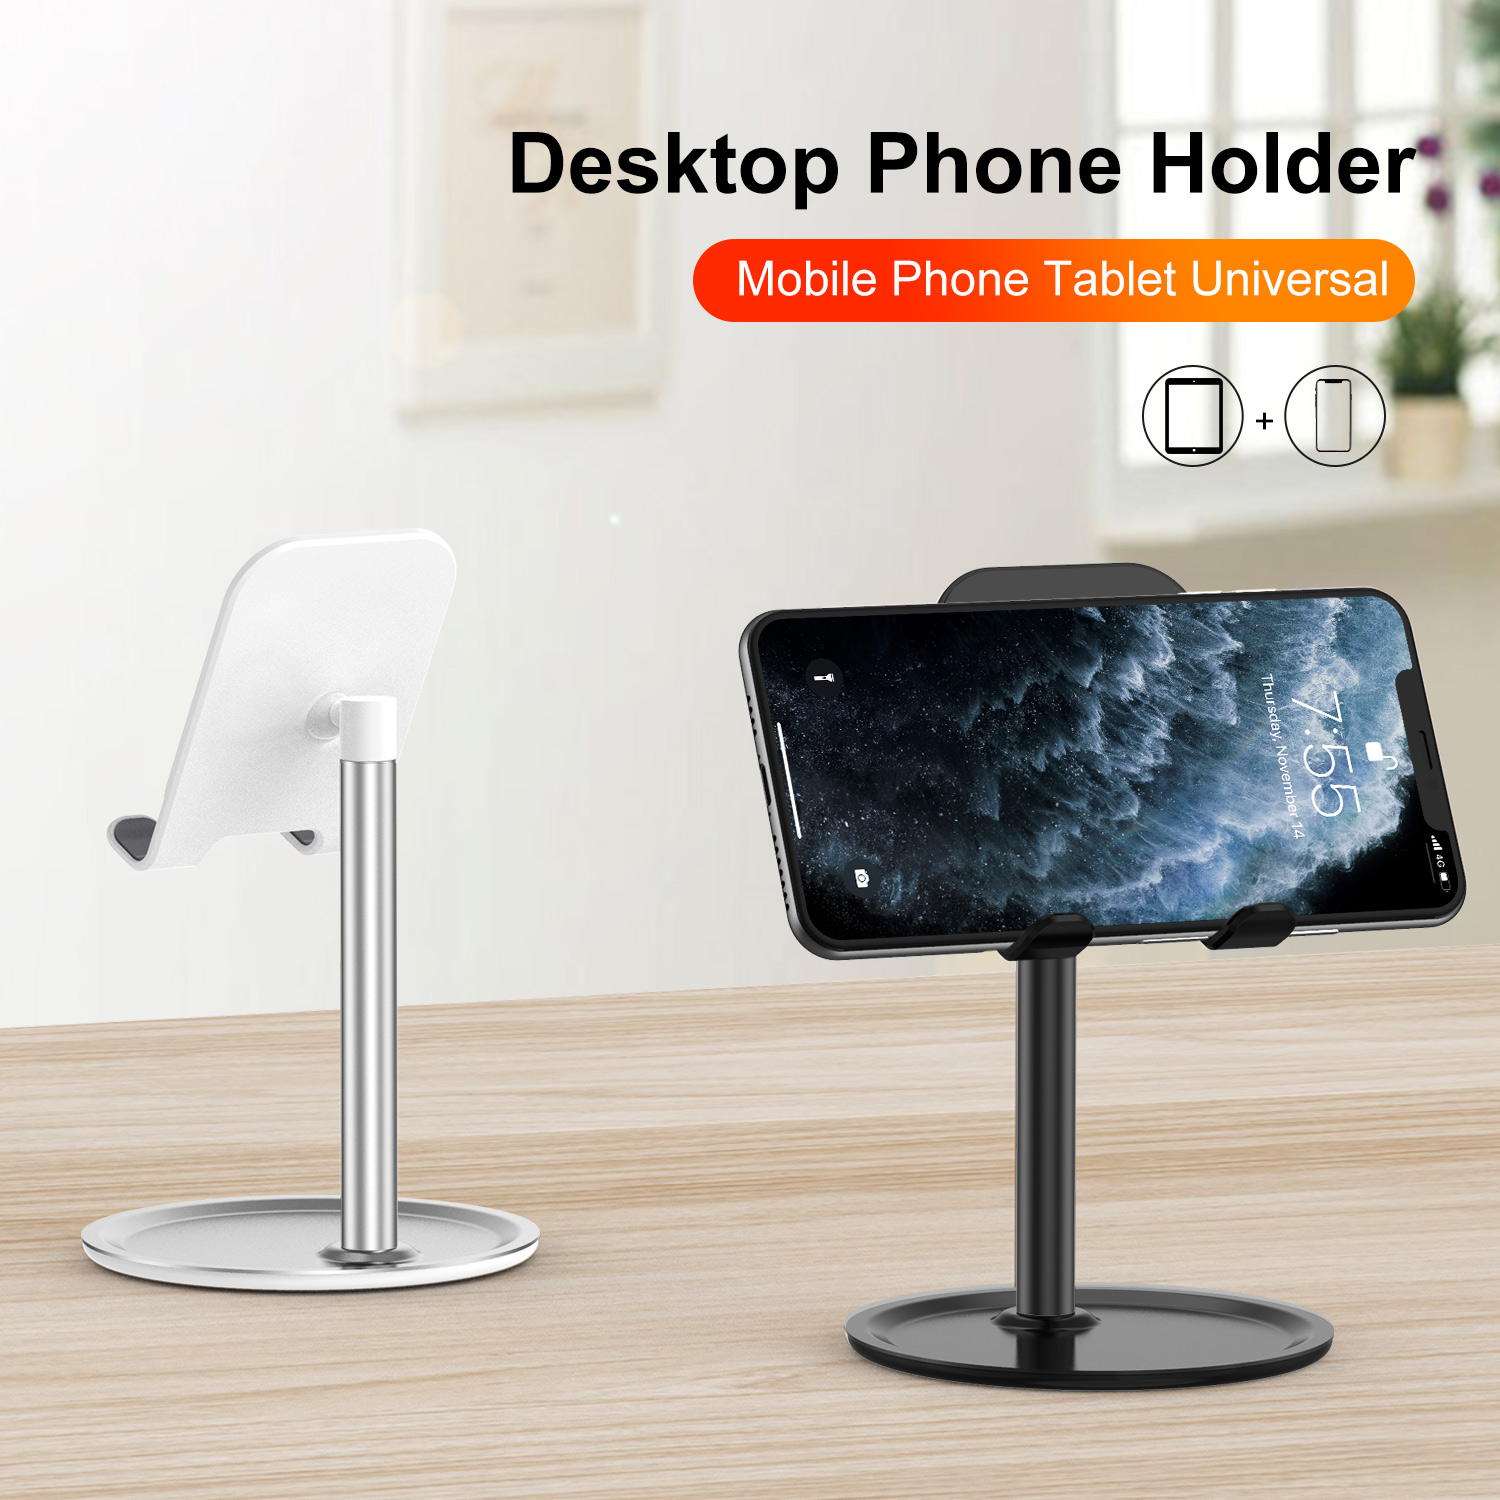 Uslion-Desktop-Phone-Holder-Universal-Tablet-Phone-Mount-Bracket-Adjustable-Stand-for-iPhone-Huawei--1709257-1